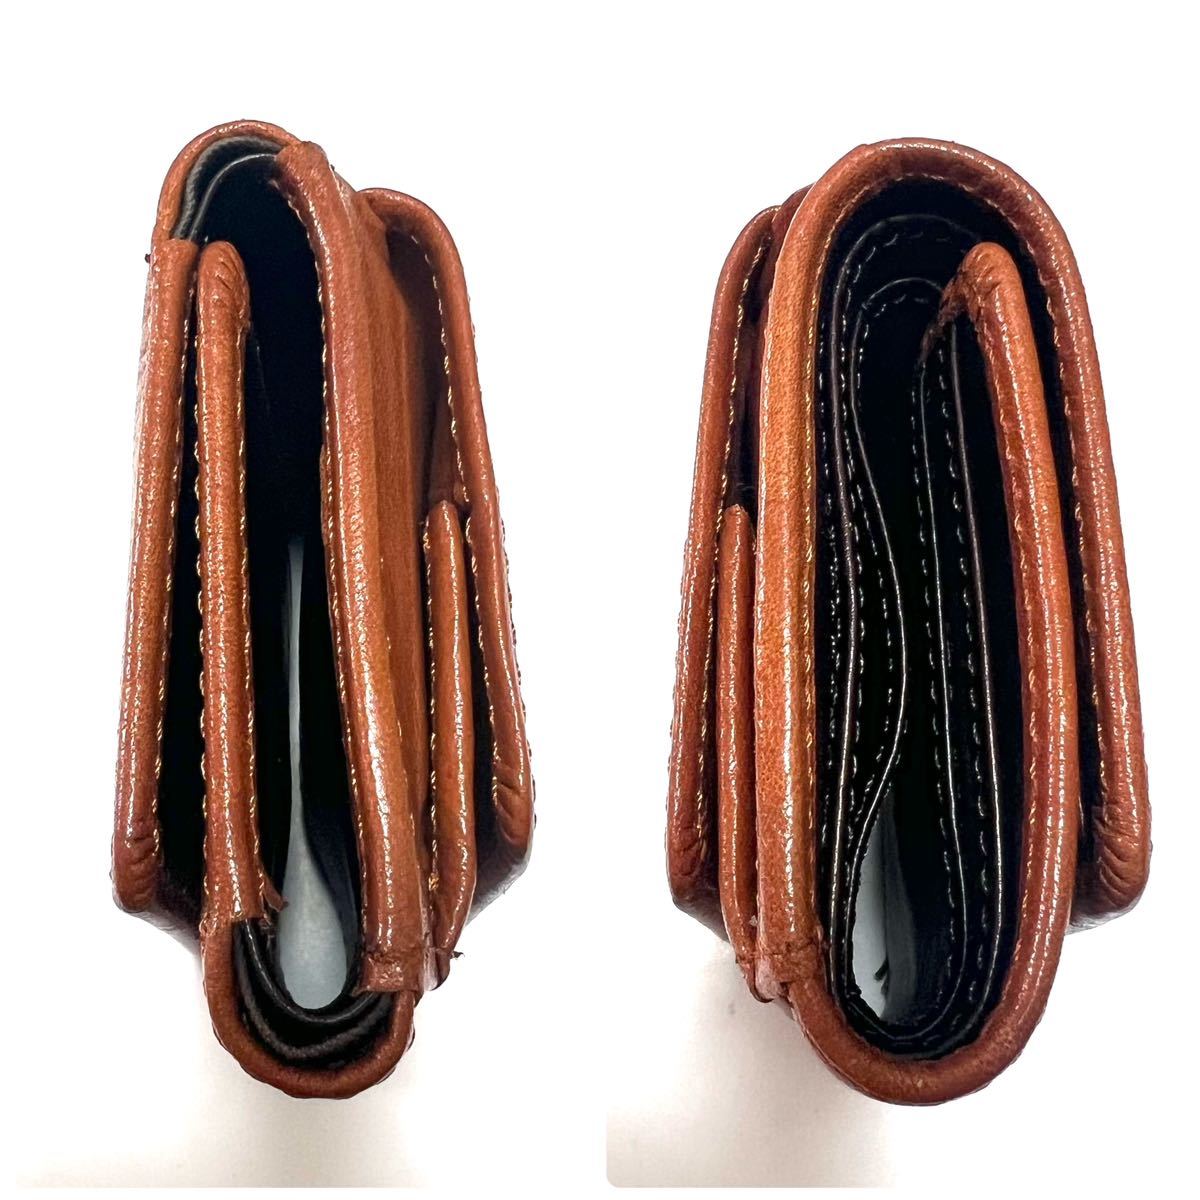 【極美品】Italy leather 折り財布 三つ折り レザー ブラウン